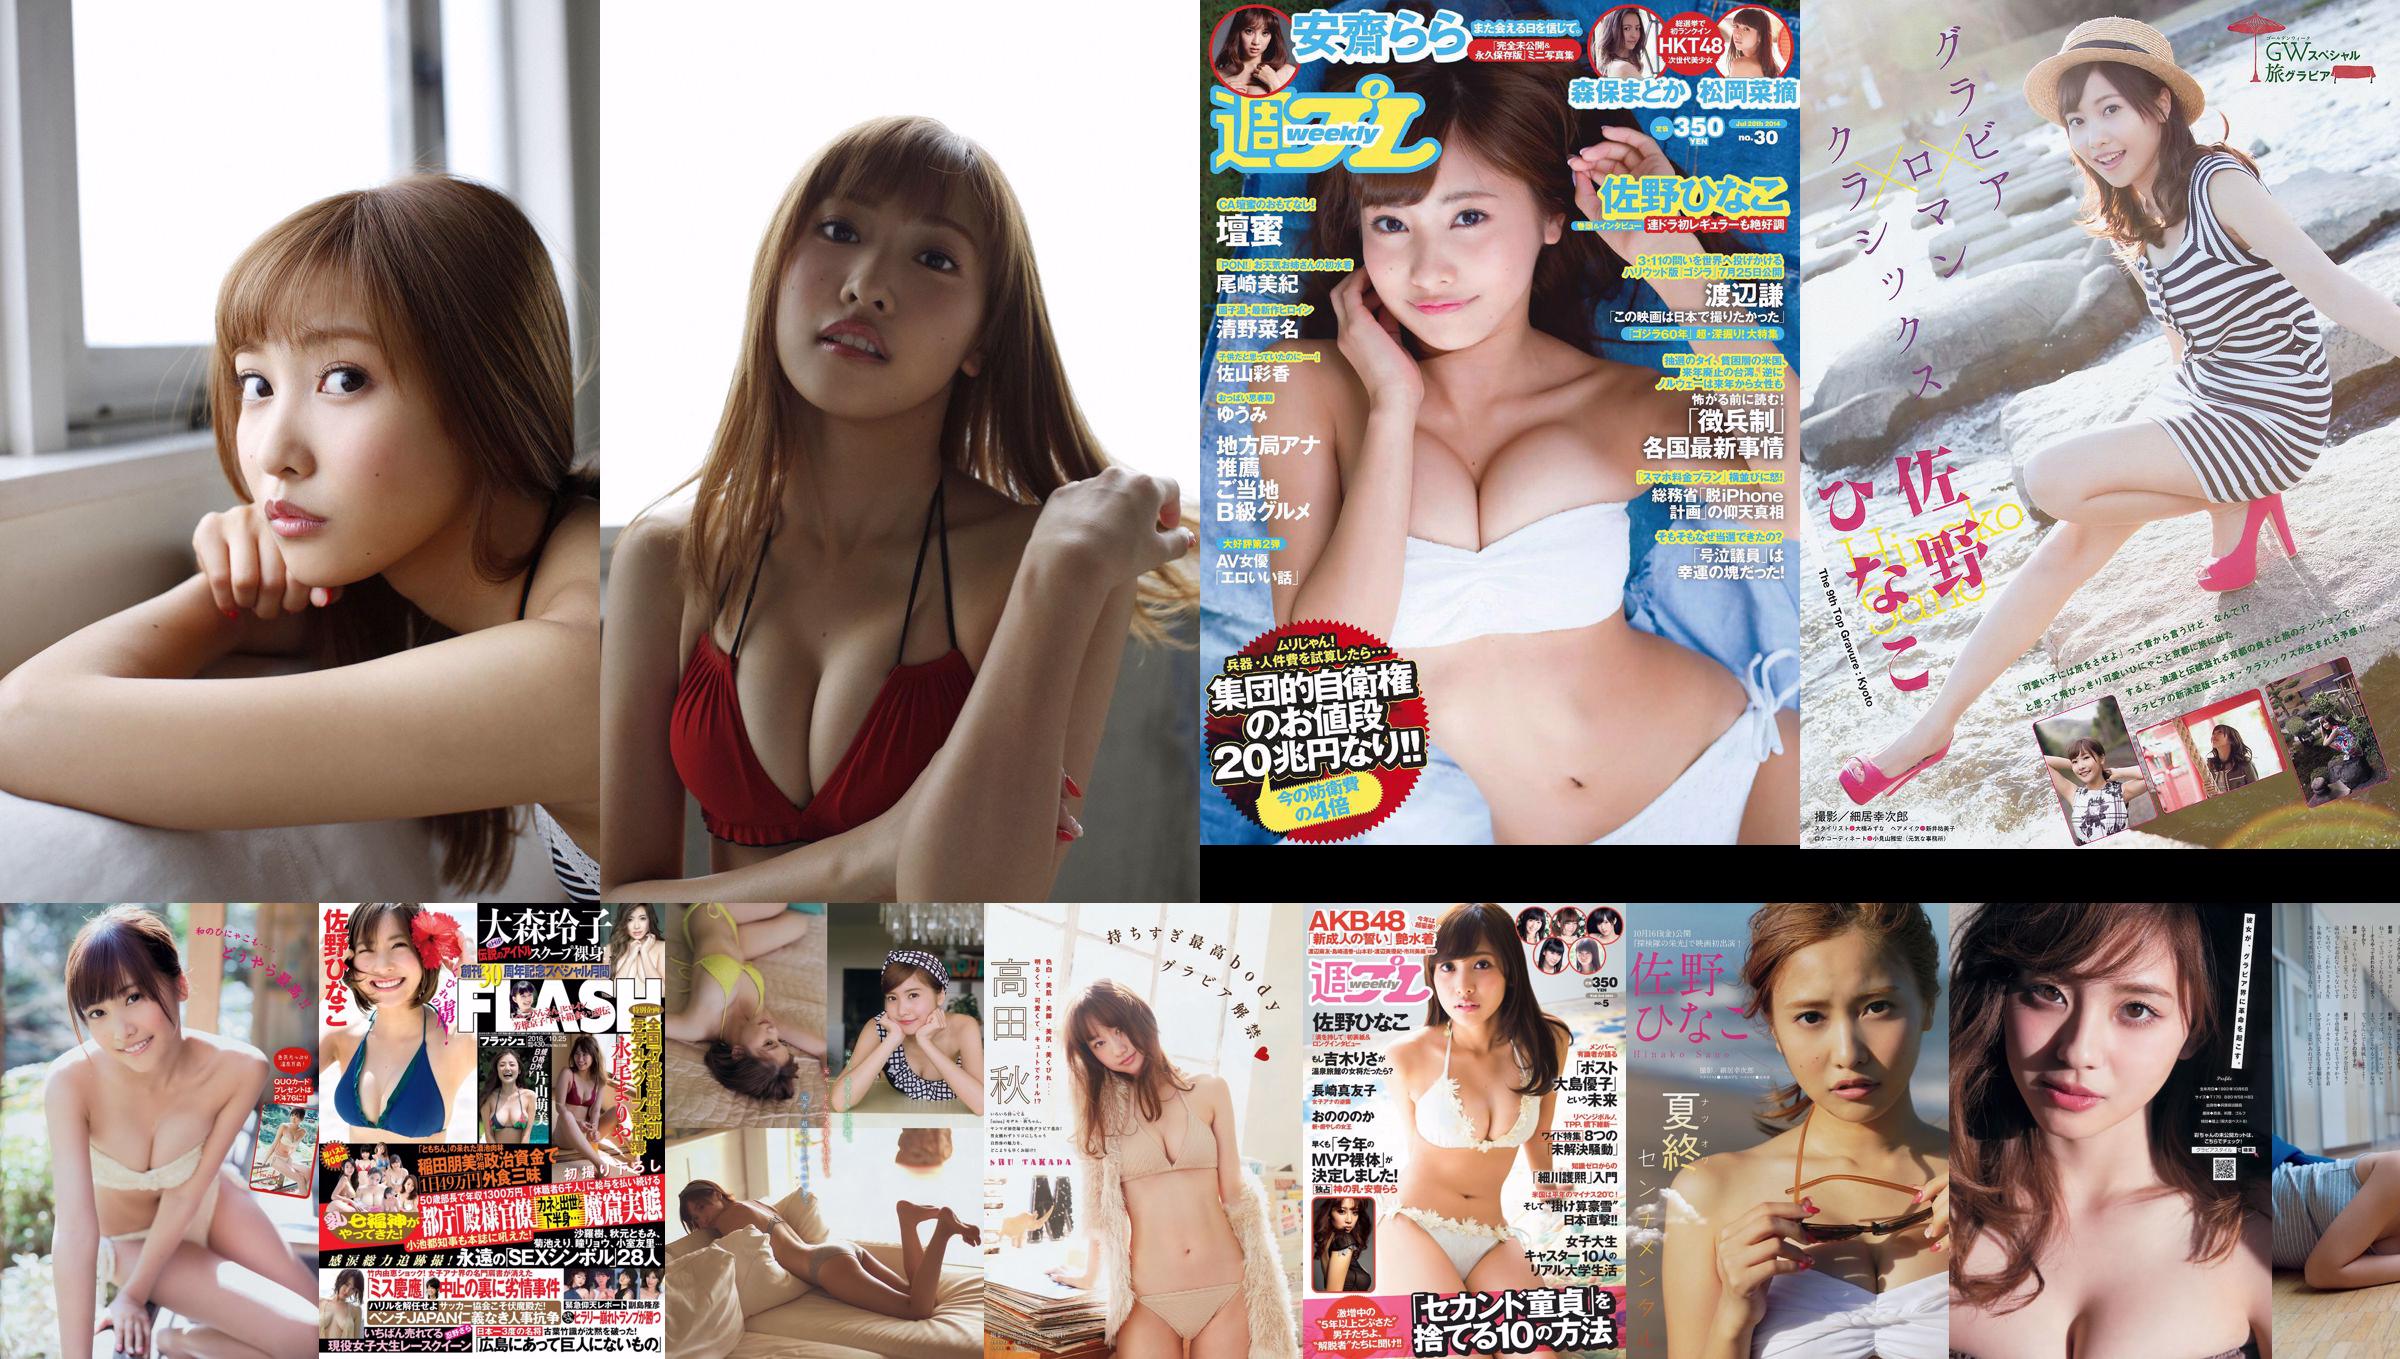 Hinako Sano Rara Anzai Madoka Moriyasu Natsumi Matsuoka Mitsu Dan Mitsu Dan Nana Seino Ayaka Sayama Yumi [wekelijkse Playboy] 2014 nr. 30 foto No.529ec4 Pagina 8